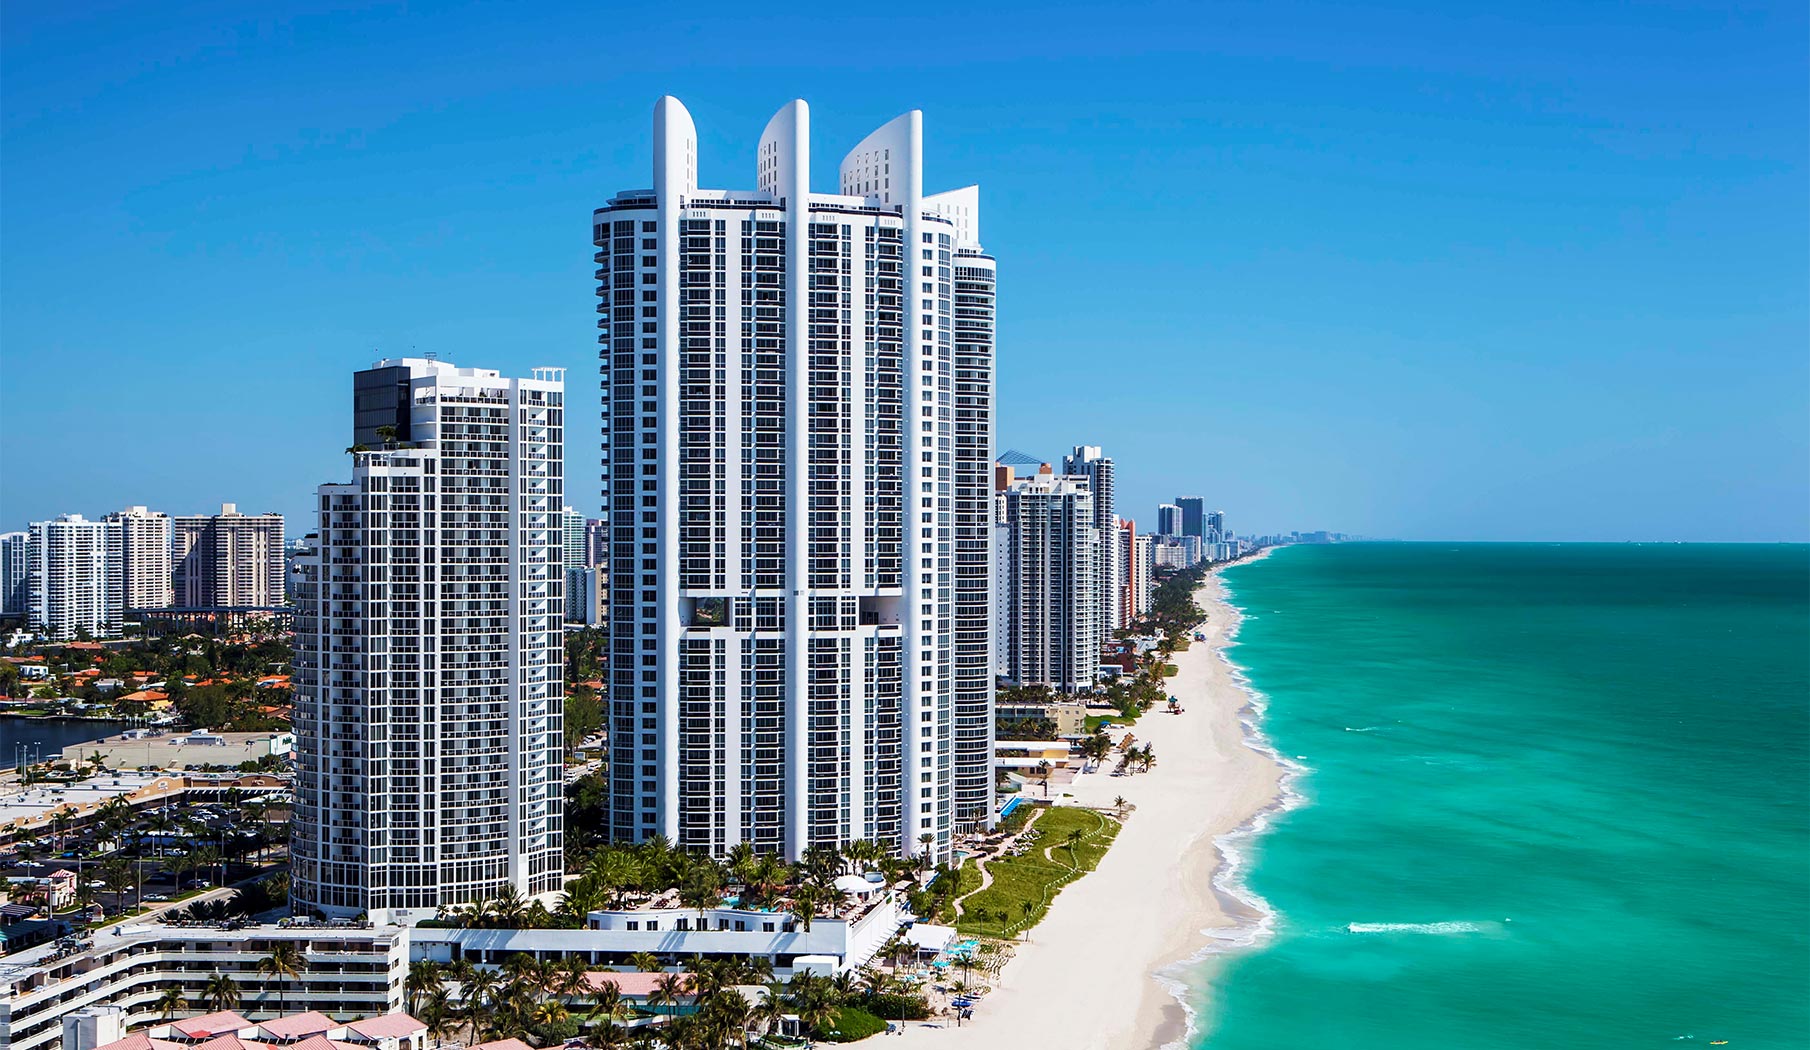 México acapara gran parte de la inversión inmobiliaria en Miami